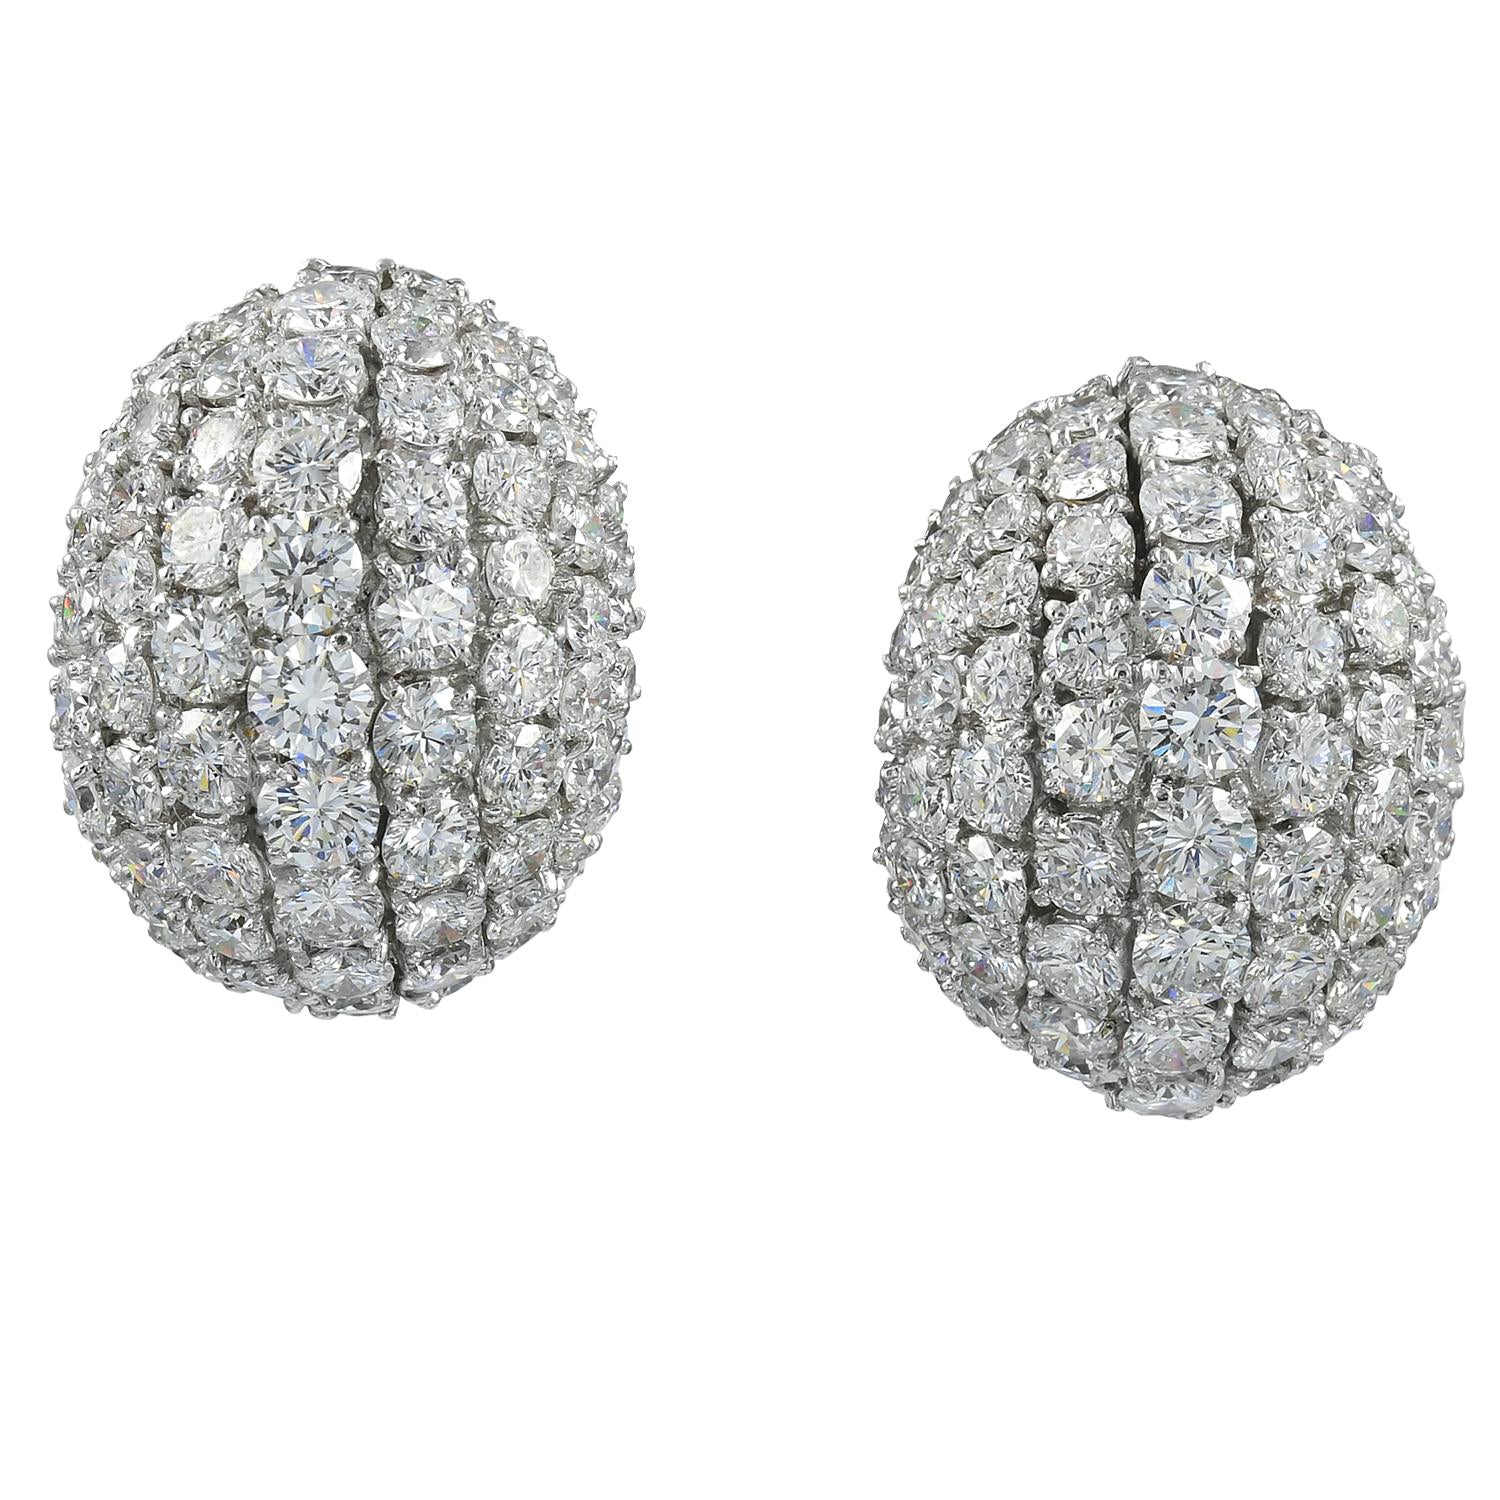 Spectra Fine Jewelry Diamond 'Dome' Earrings in 18kt Gold